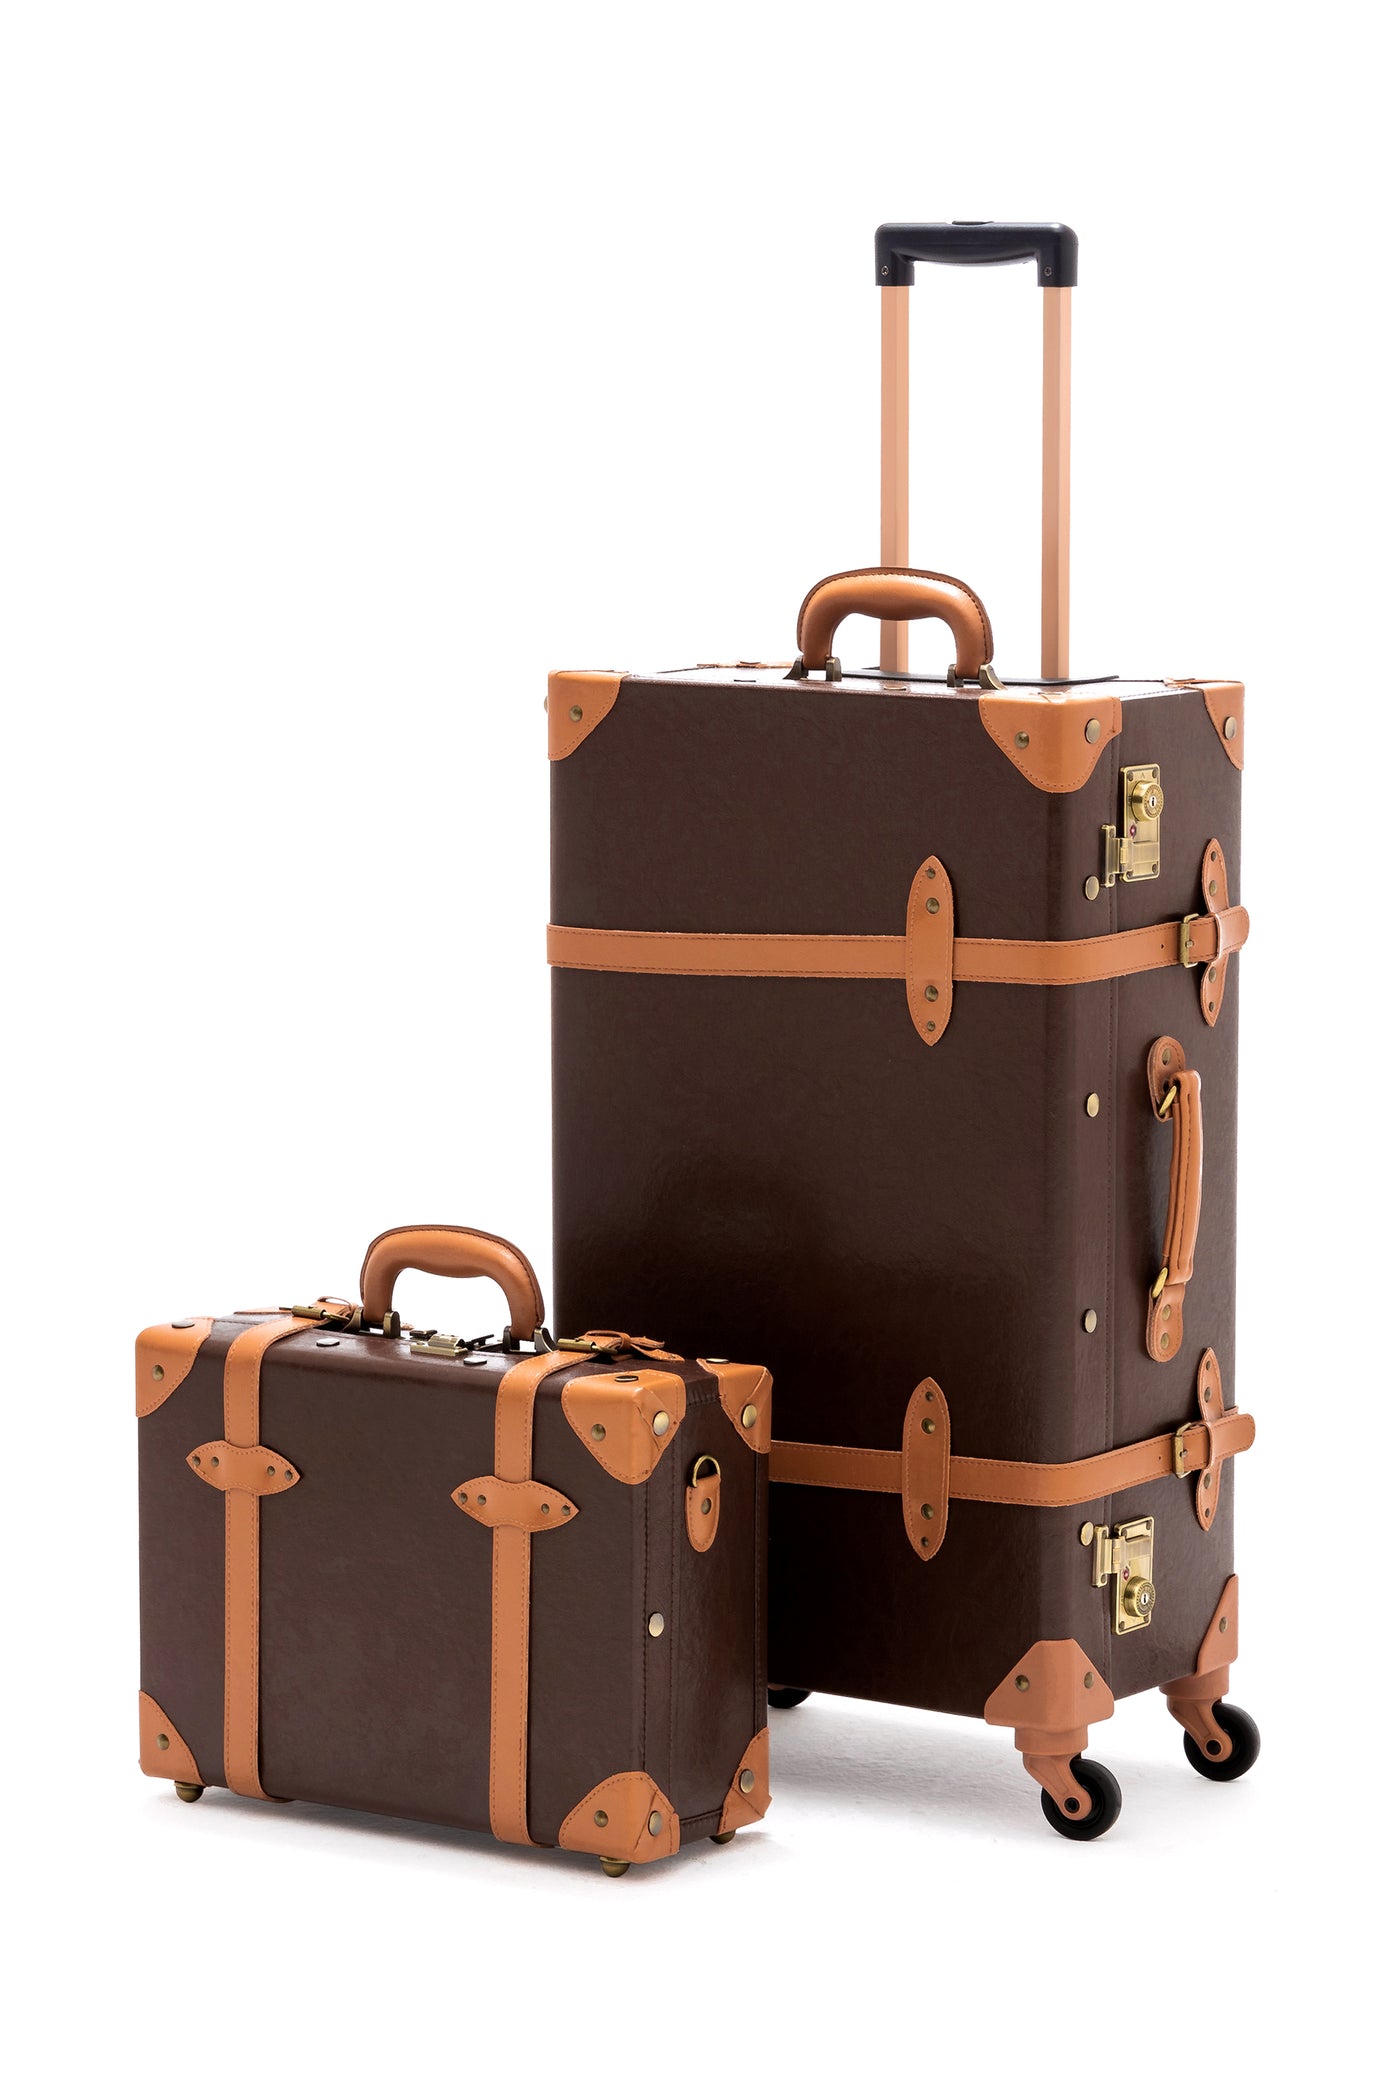 Louis Vitton Luggage Set  Louis vuitton trunk, Louis vuitton luggage,  Leather luggage set